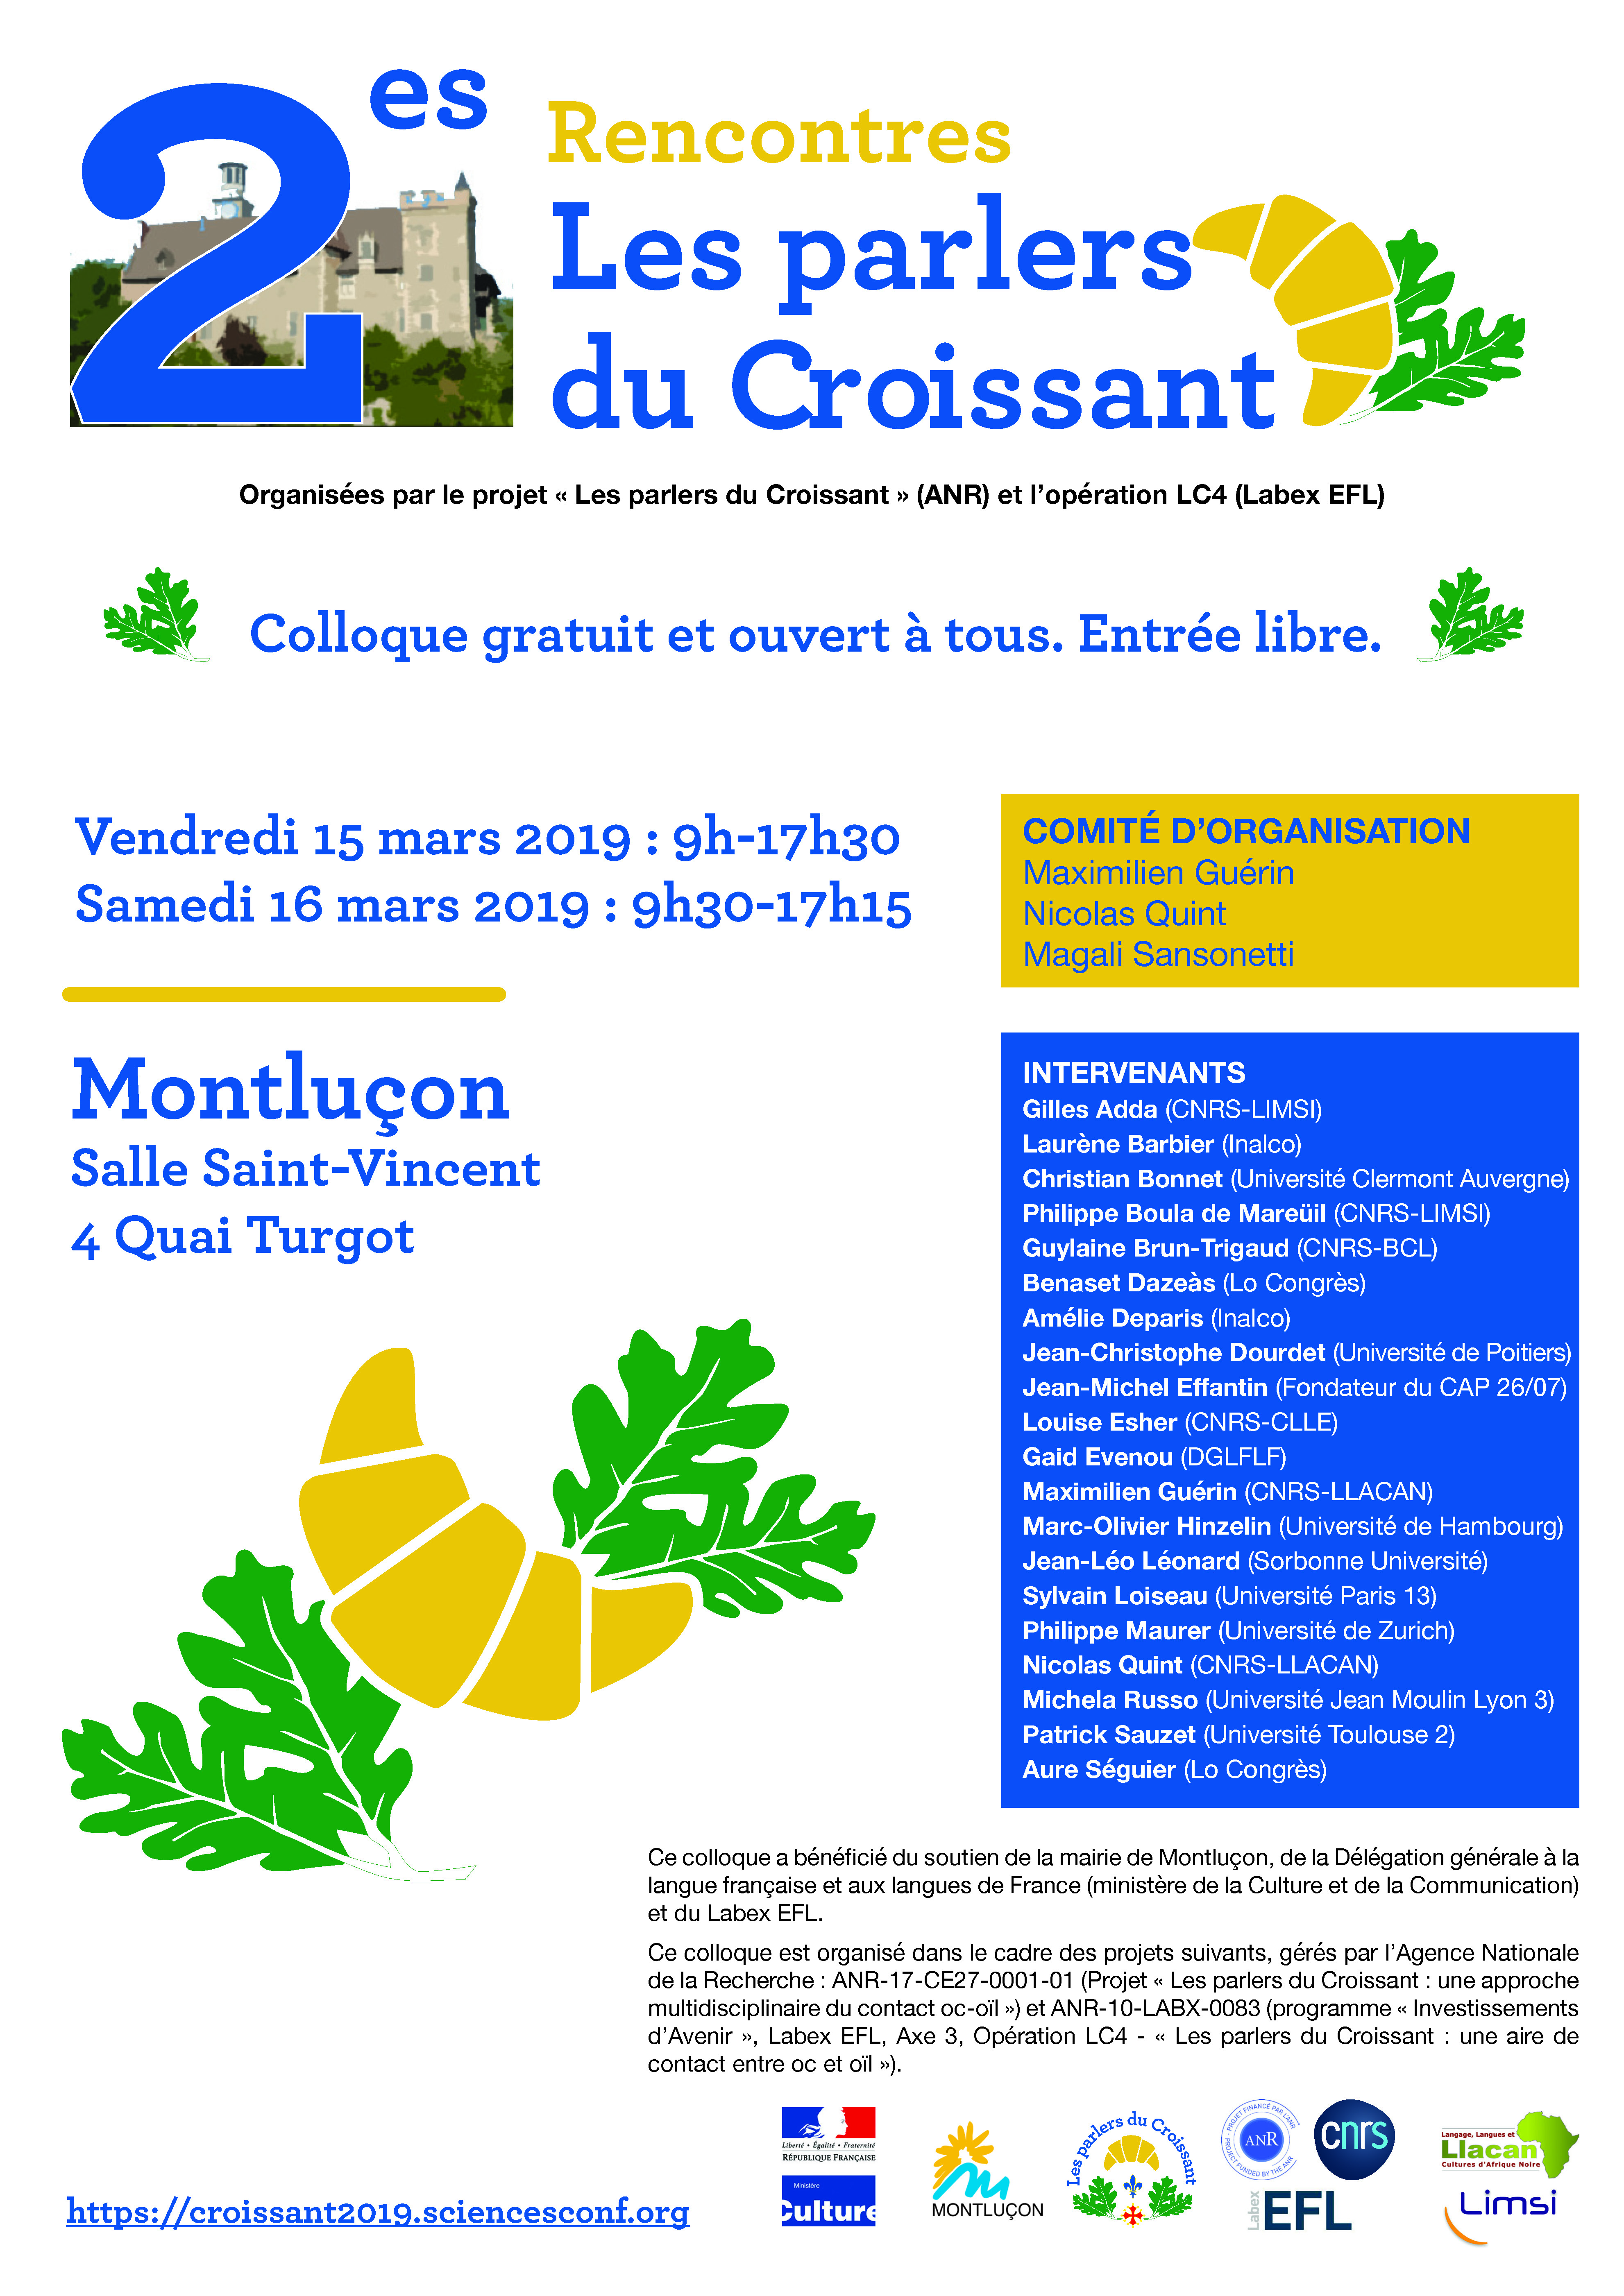 COLLOQUE "LES PARLERS DU CROISSANT" -
Maximilien Guérin (CNRS-LLACAN)
La dérivation nominale dans les parlers du Croissant